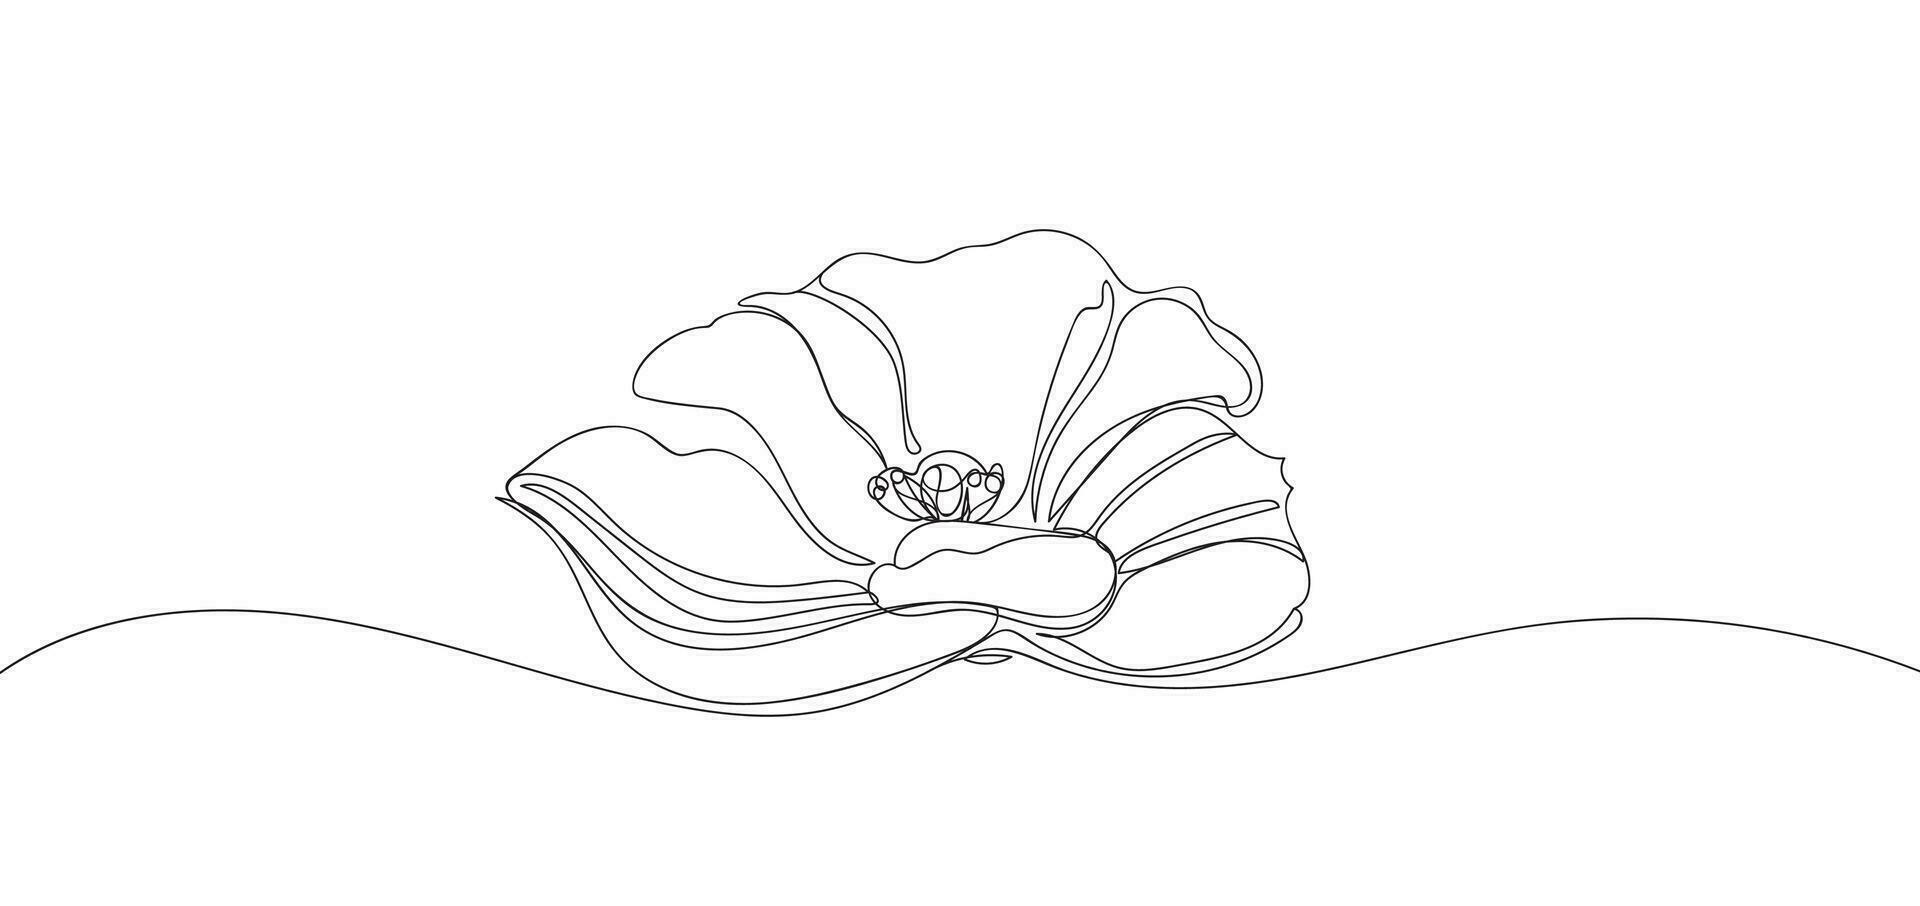 bloem in single doorlopend lijn tekening stijl voor logo of embleem. een lijn botanisch illustratie. contour tekening van papaver bloem vector